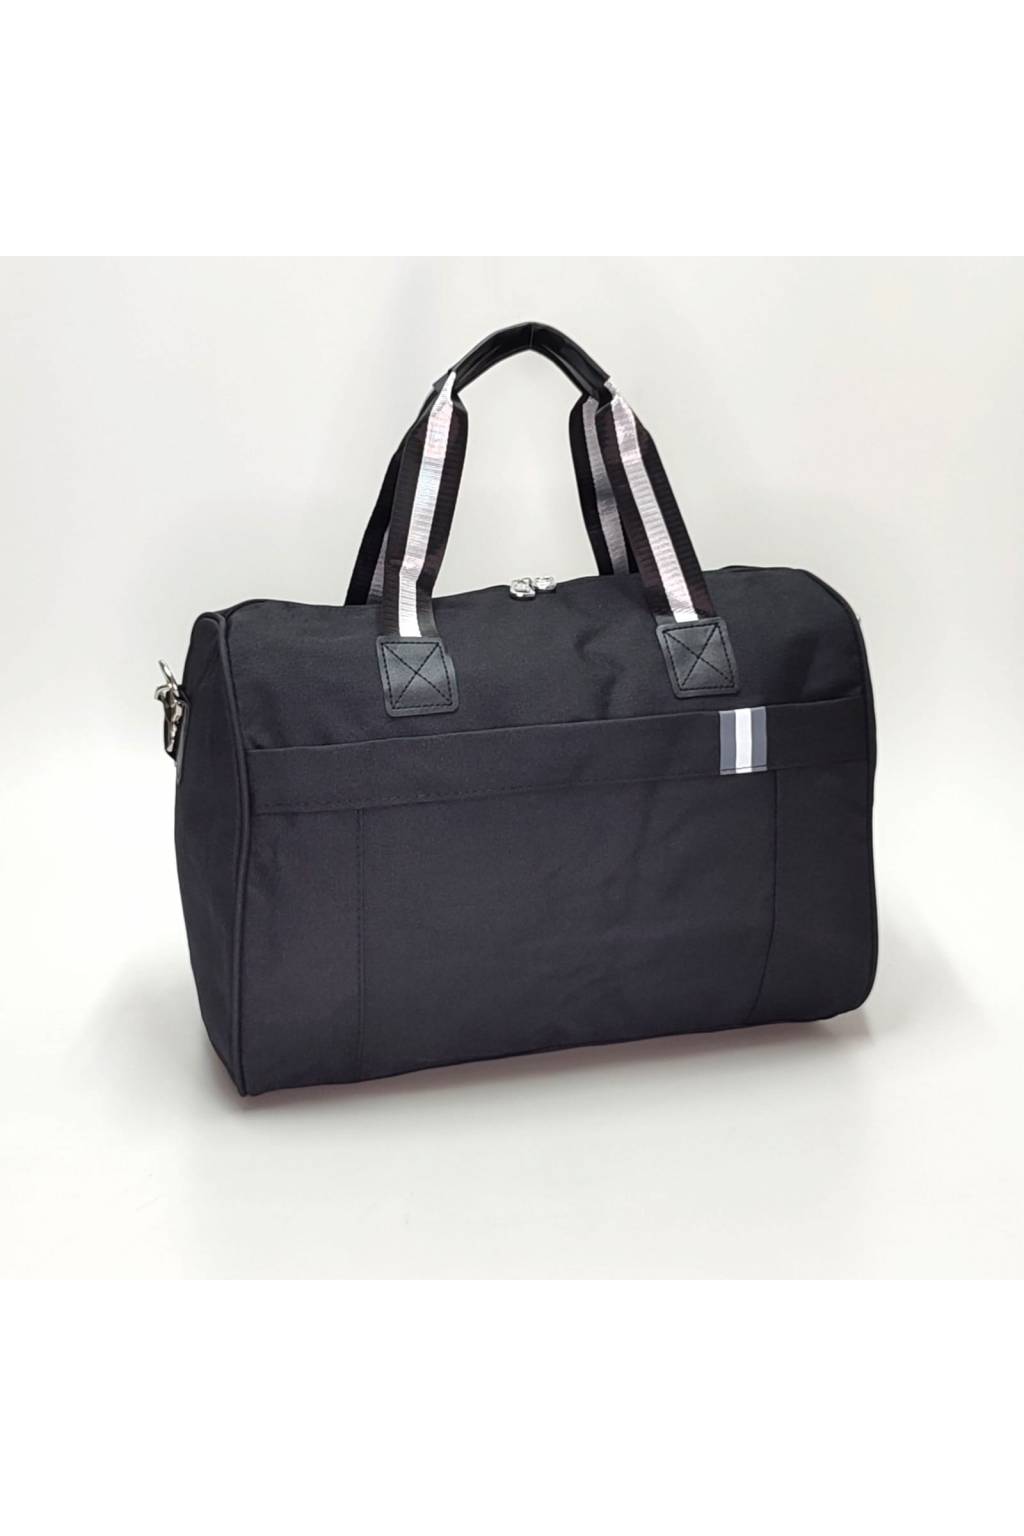 Cestovná taška B7047 M sivá www.kabelky vypredaj (8)